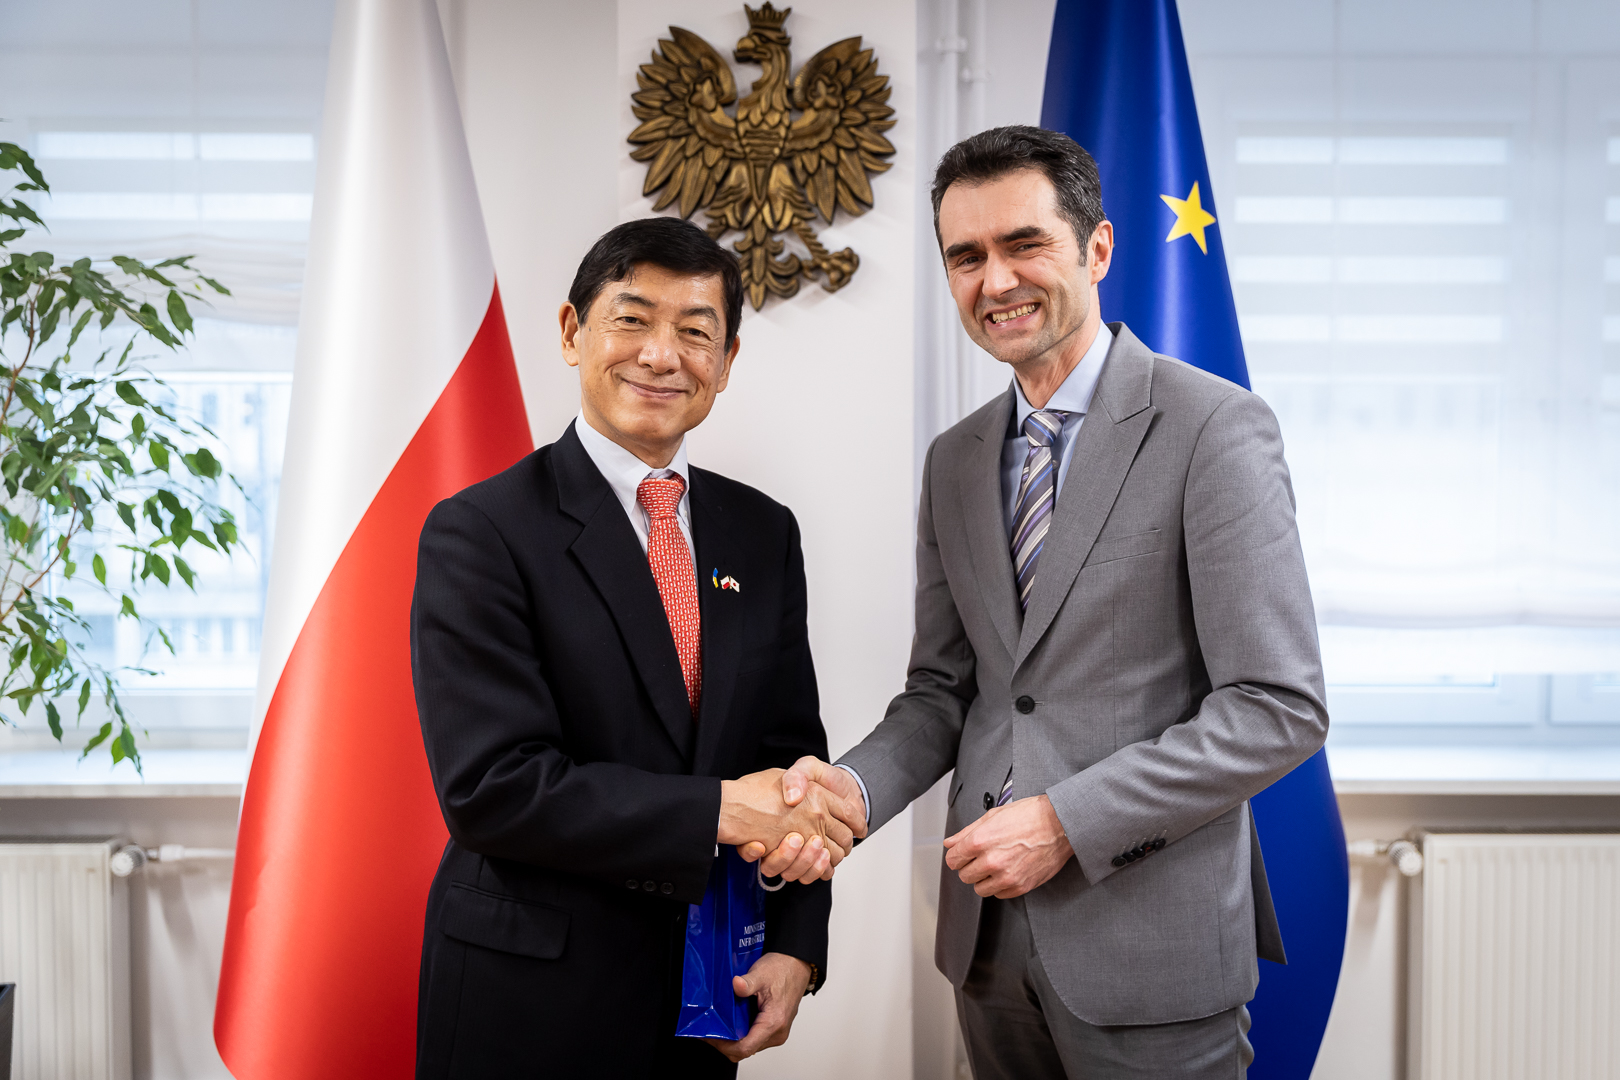 Wiceminister infrastruktury Piotr Malepszak i ambasador Japonii w Polsce Akio Miyajima rozmawiali o współpracy w zakresie transportu między krajami.